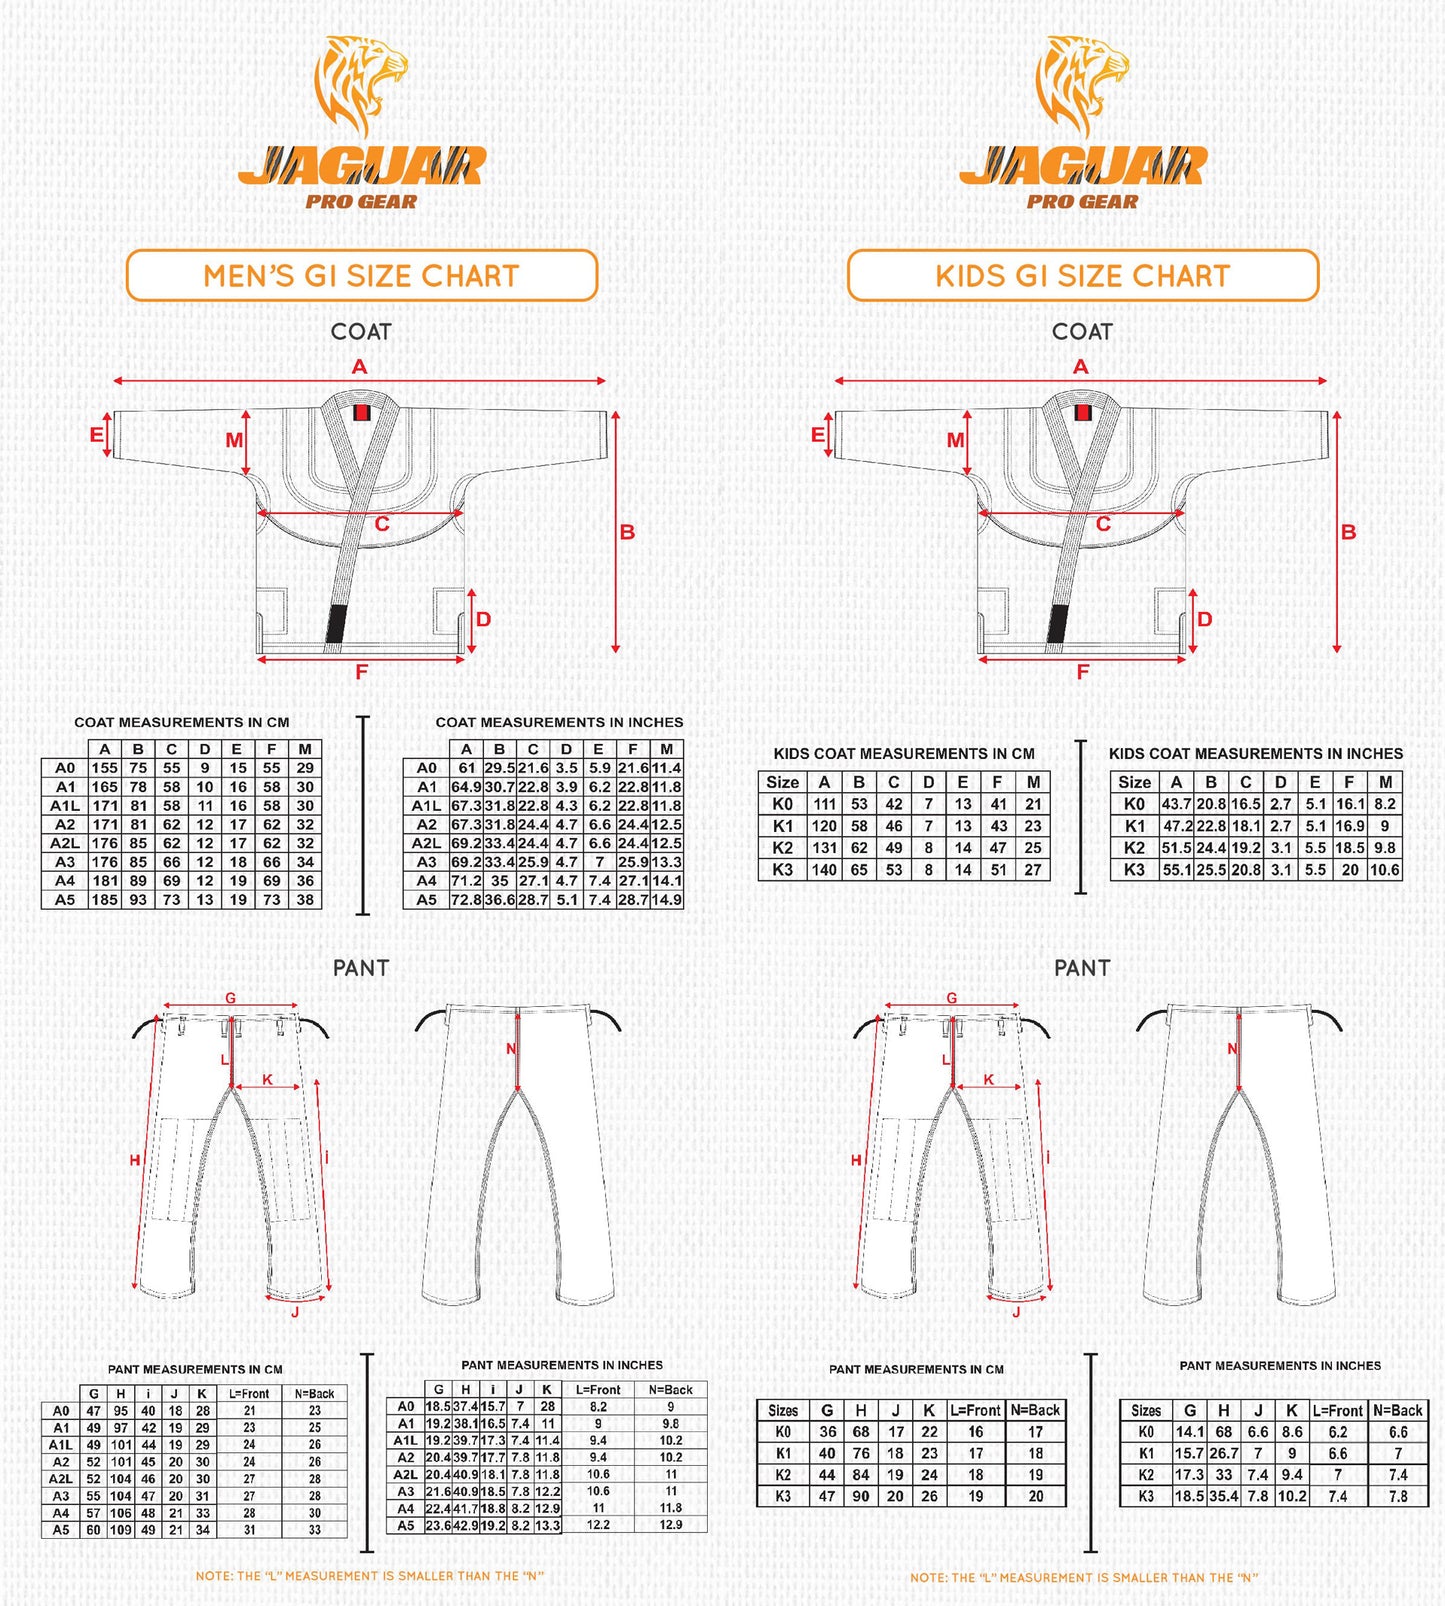 Jaguar Pro Gear – Custom Name And Logo The Grapplers Inner Sublimated - Pro Brazilian Jiu Jitsu BJJ Kimono Gi Uniform